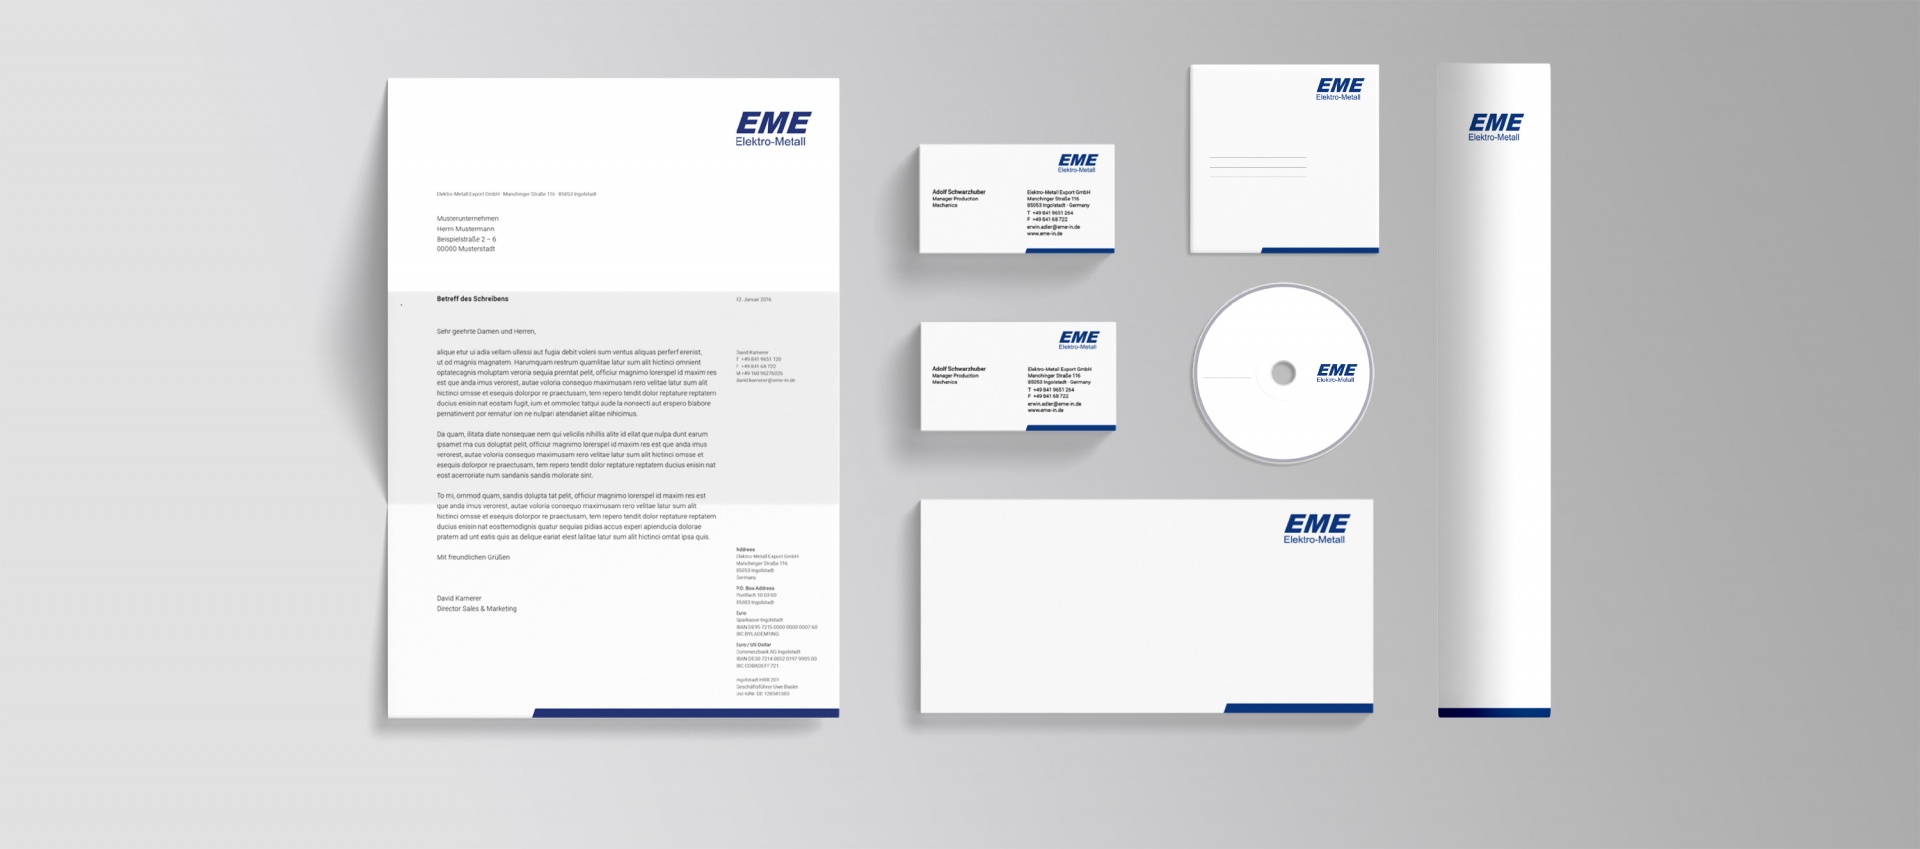 Corporate Design - EME Elektro Metall - Geschäftsausstattung